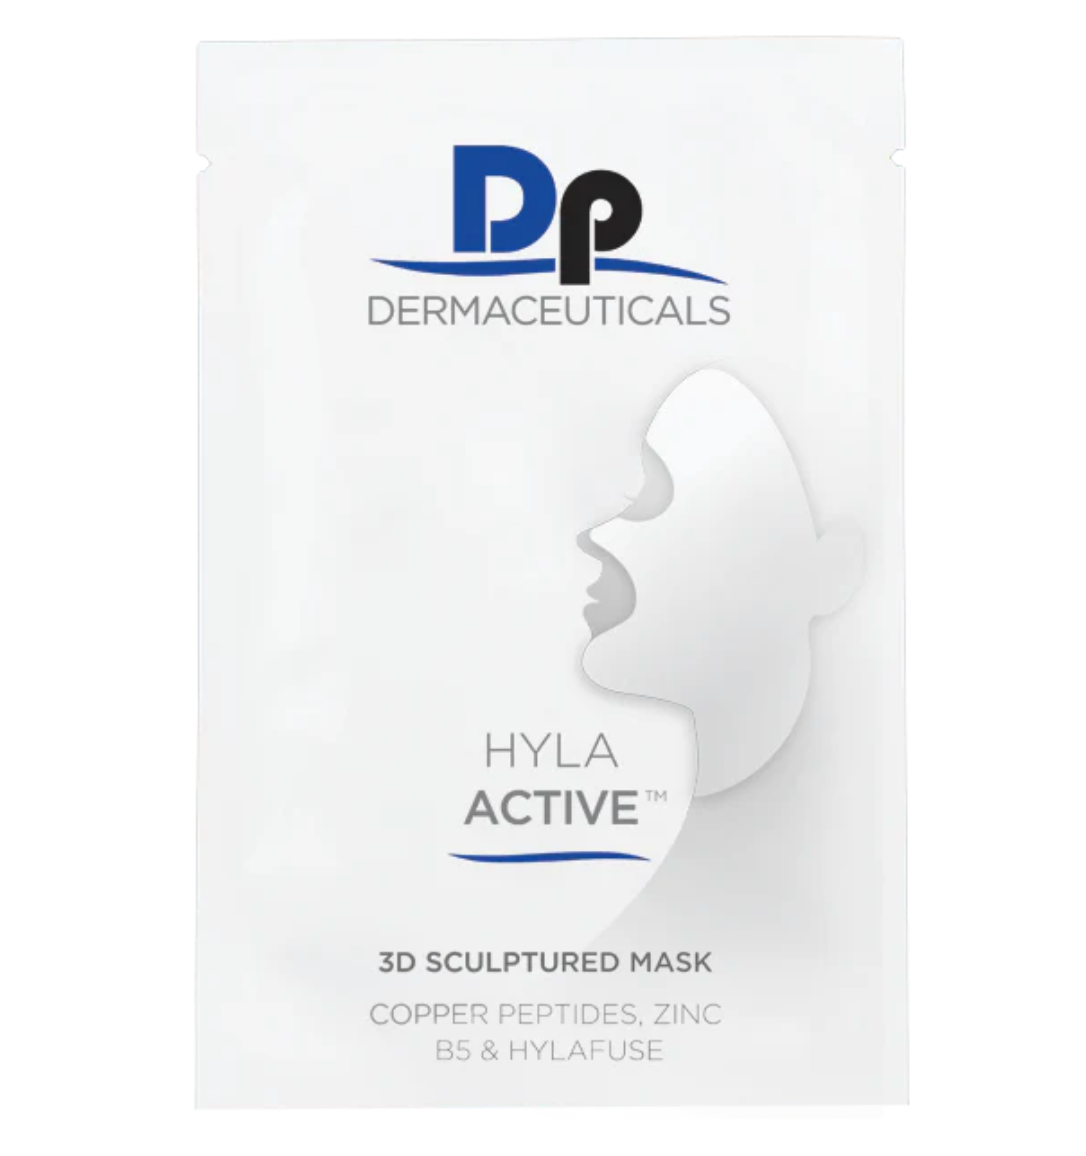 DP DERMACEUTICALS HYLA ACTIVE 3D SCULPTURED MASK™  - 5kpl Kasvonaamioita. Kangasnaamio